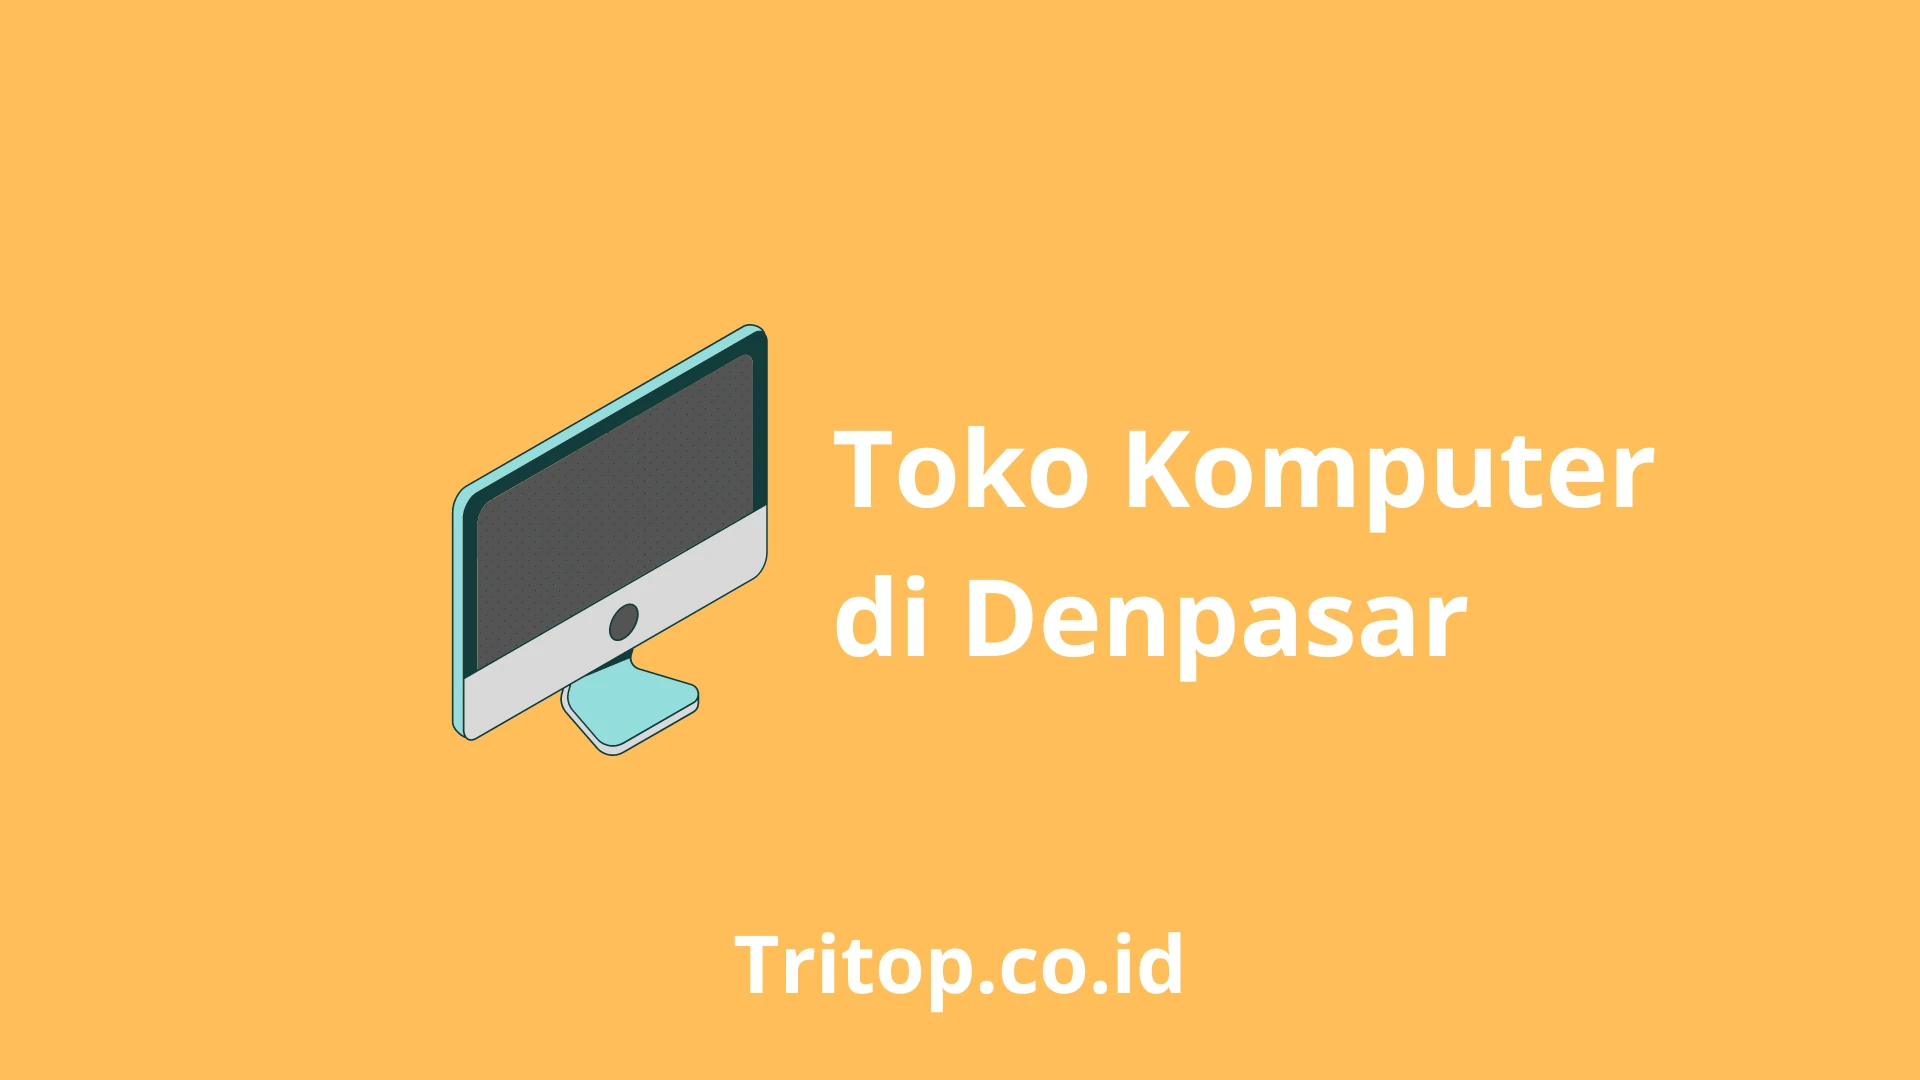 Toko Komputer Denpasar Tritop.co.id